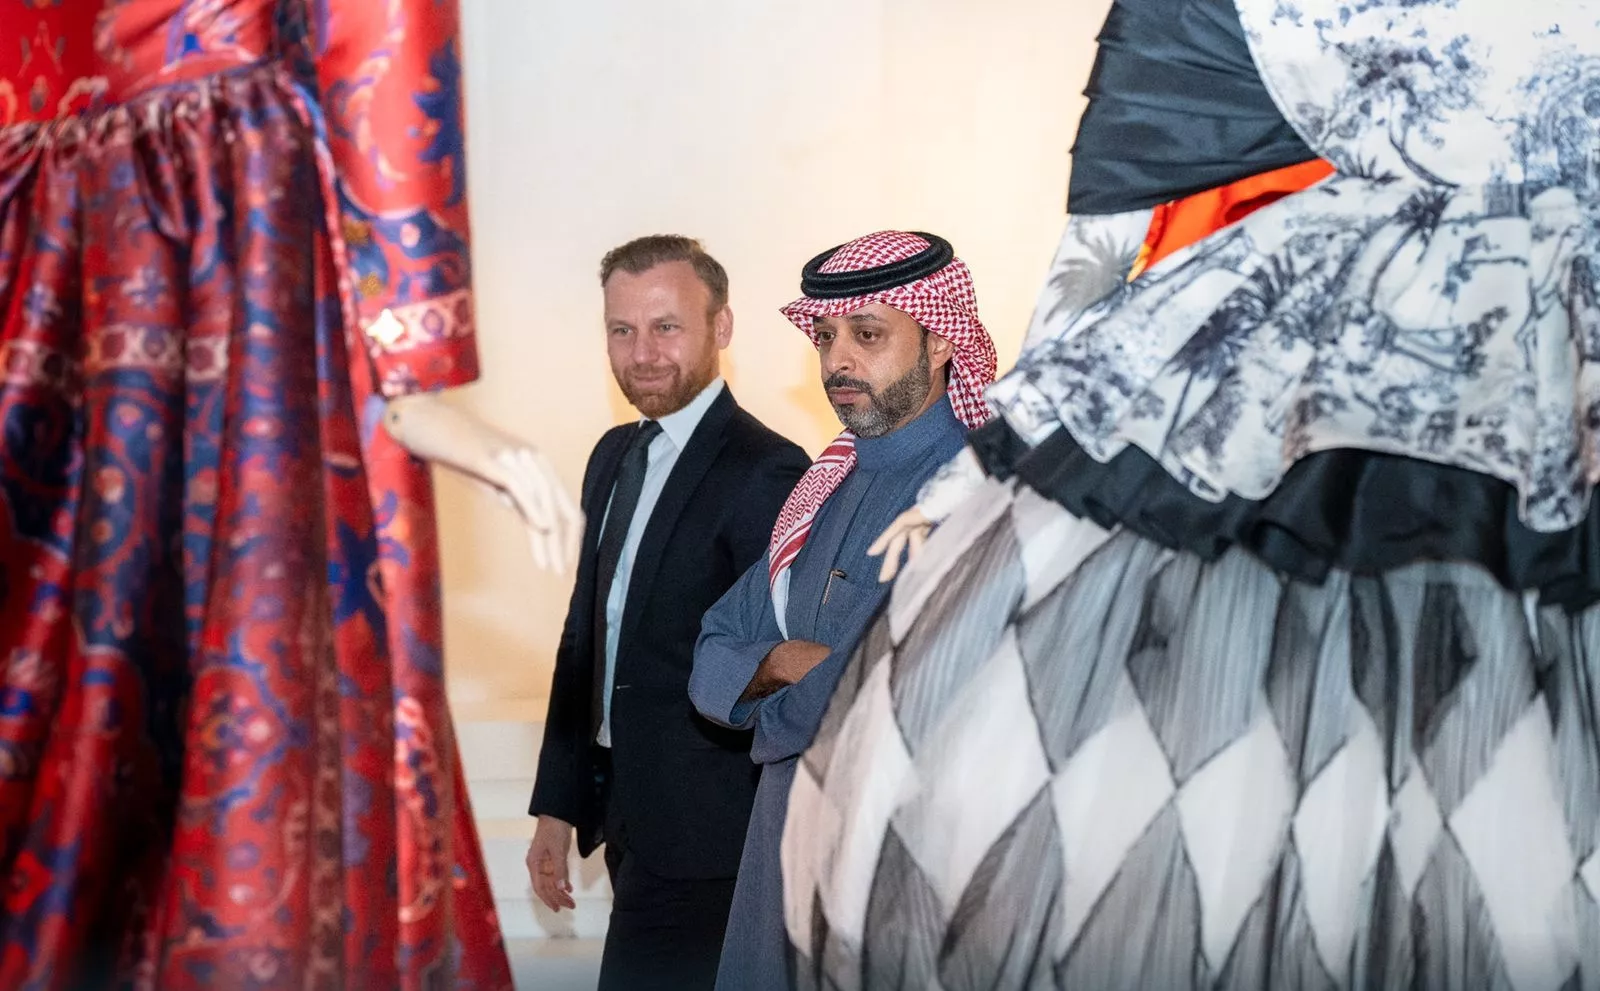 هيئة الأزياء في المملكة تطلق معرض التراث السعودي ضمن برنامج 100 براند سعودي